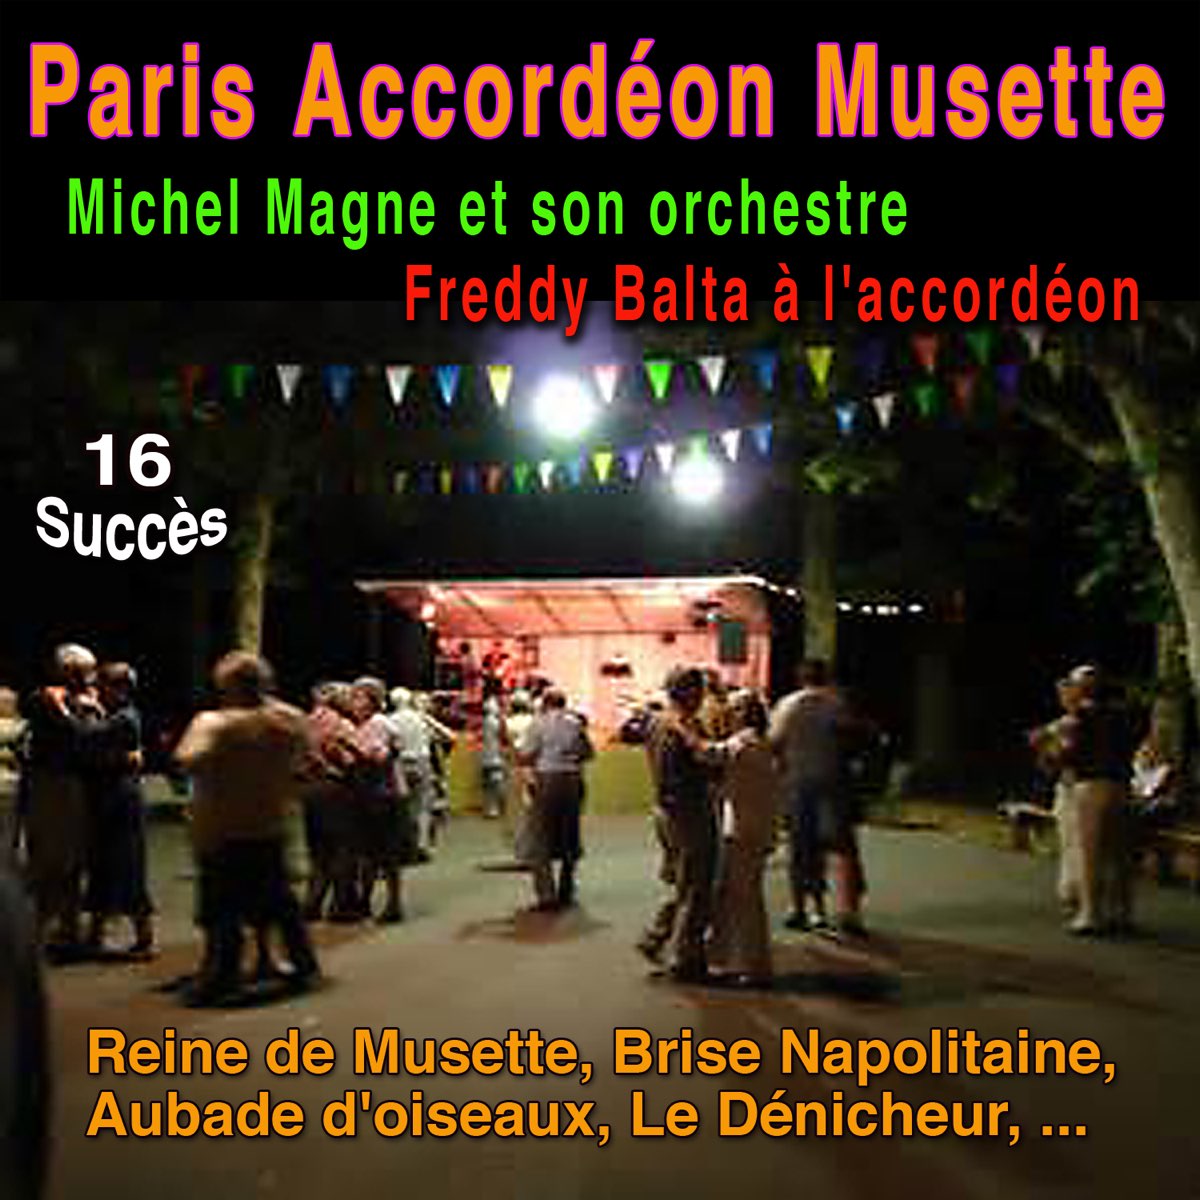 Paris accordéon Musette (feat. Freddy Balta) - Album by Michel Magne et son  orchestre - Apple Music